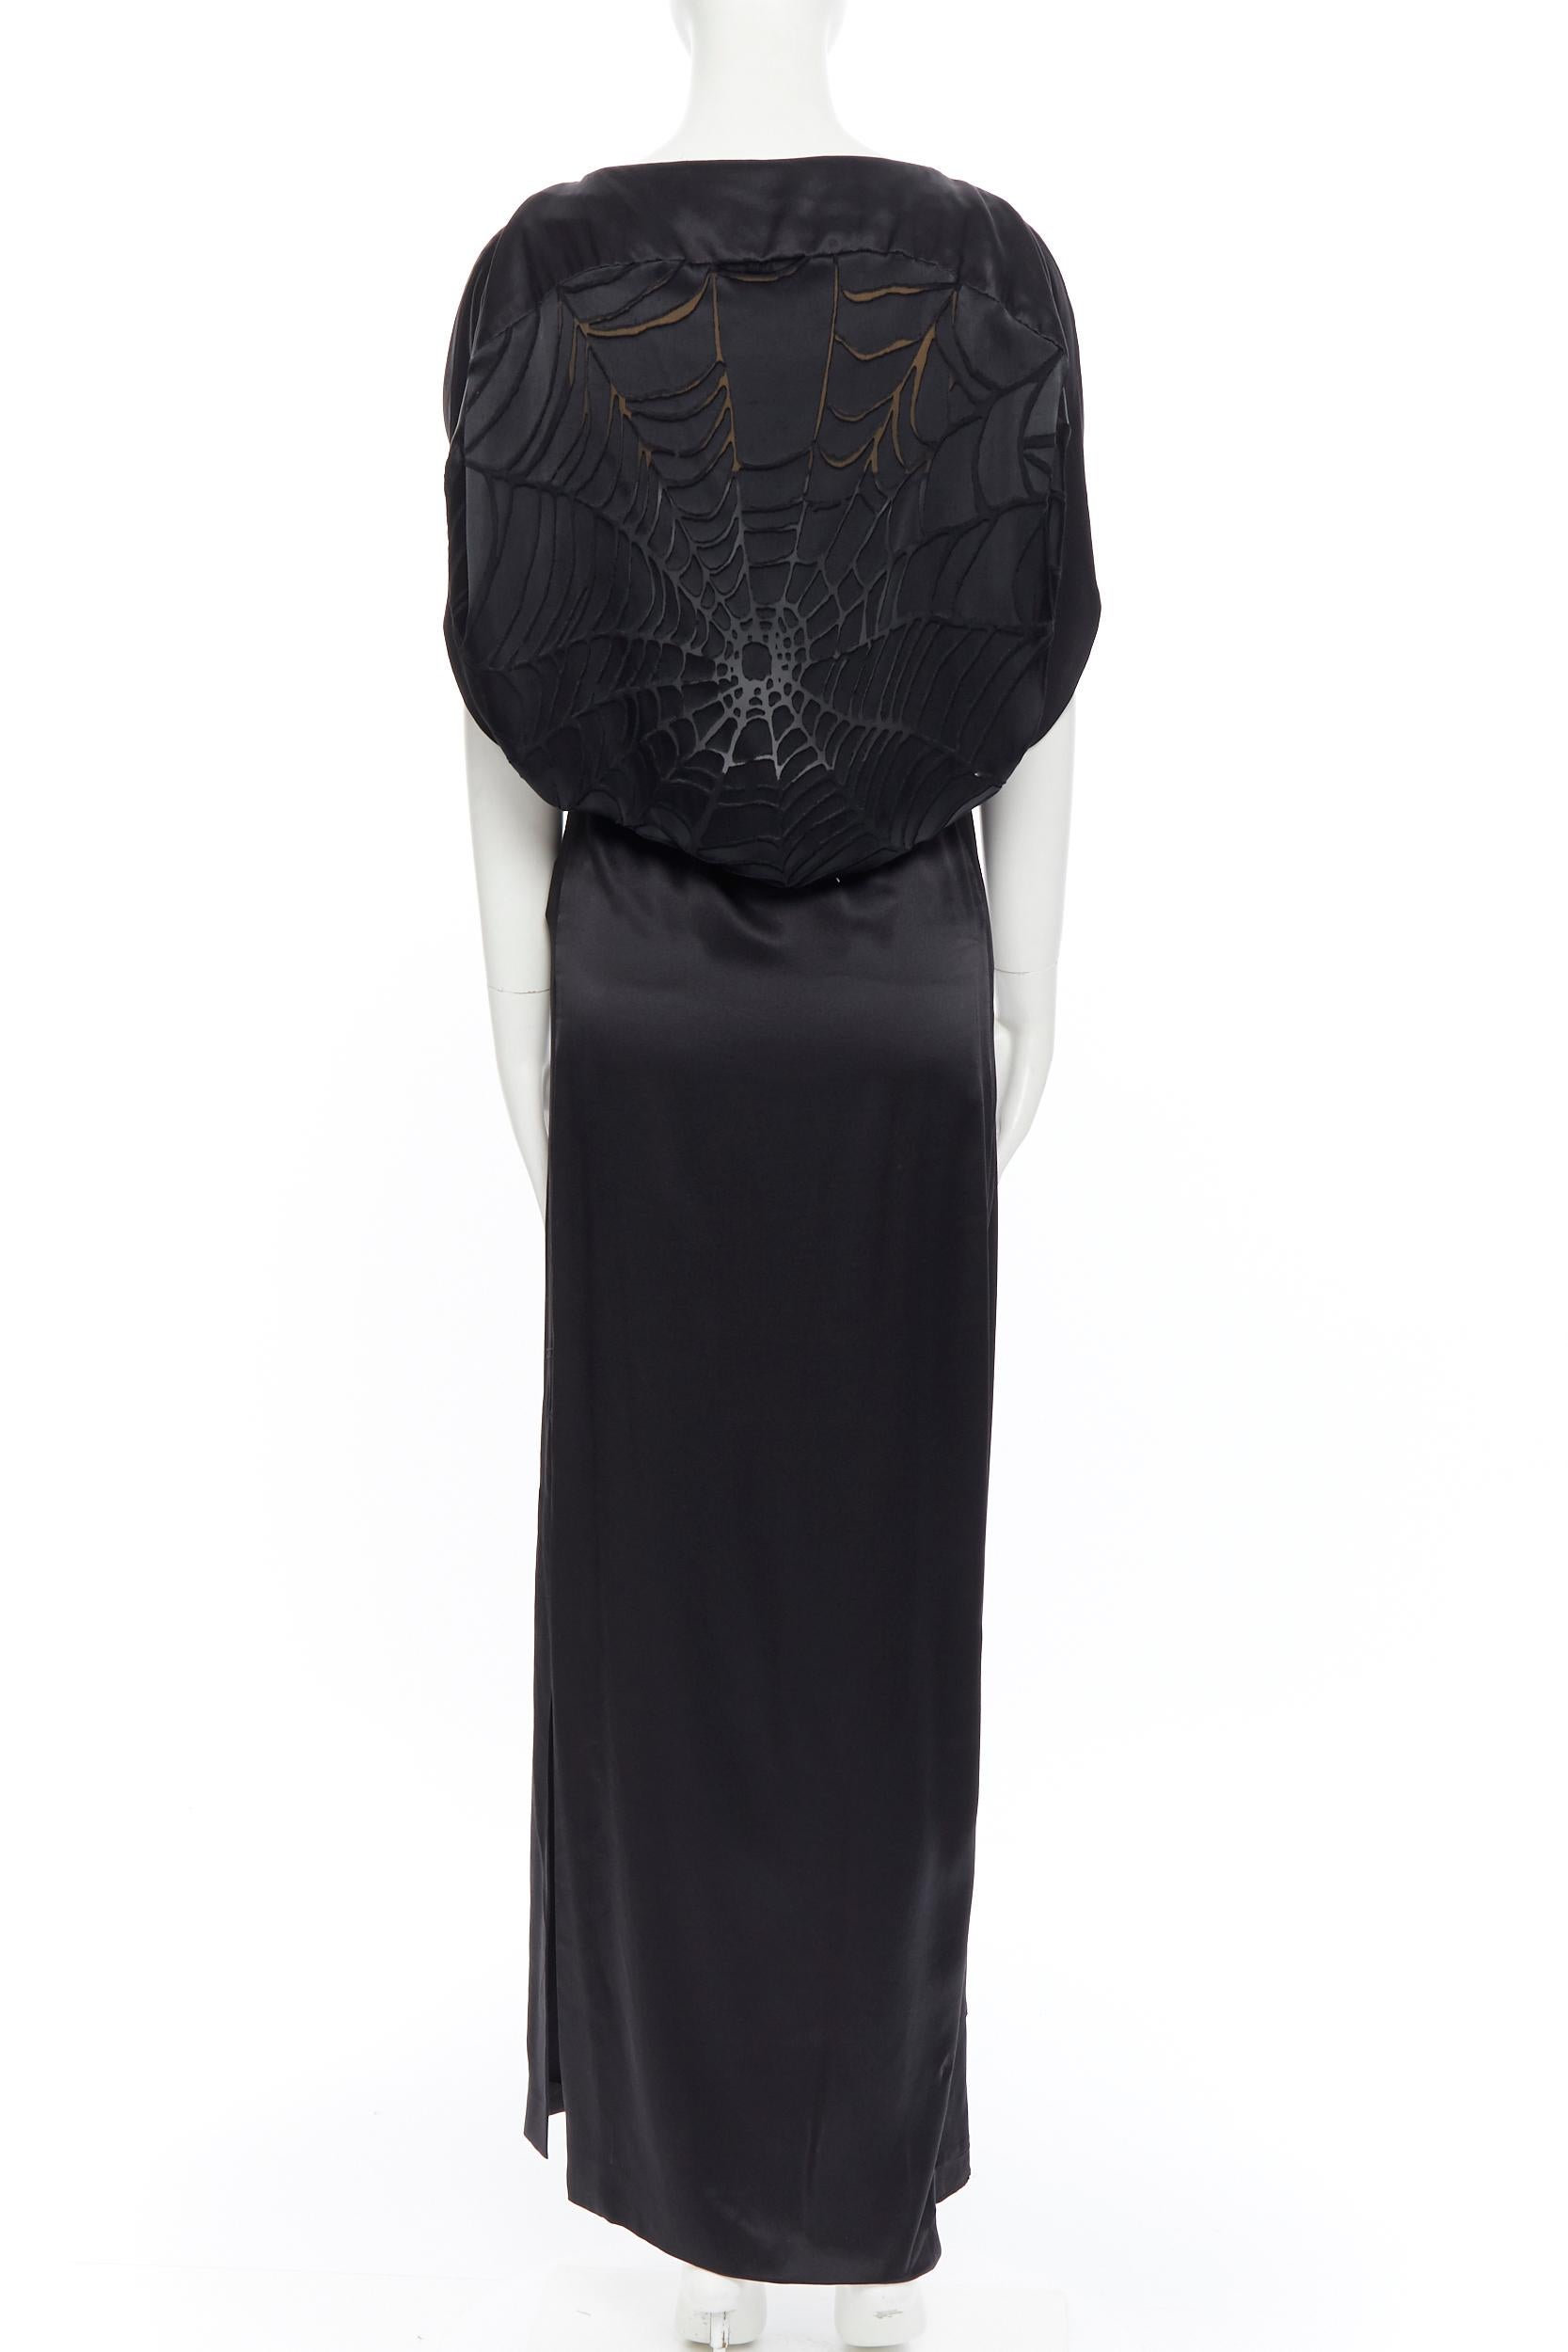 Black MAISON MARTIN MARGIELA black silk cocoon bias cut dress gown cape slit maxi IT36